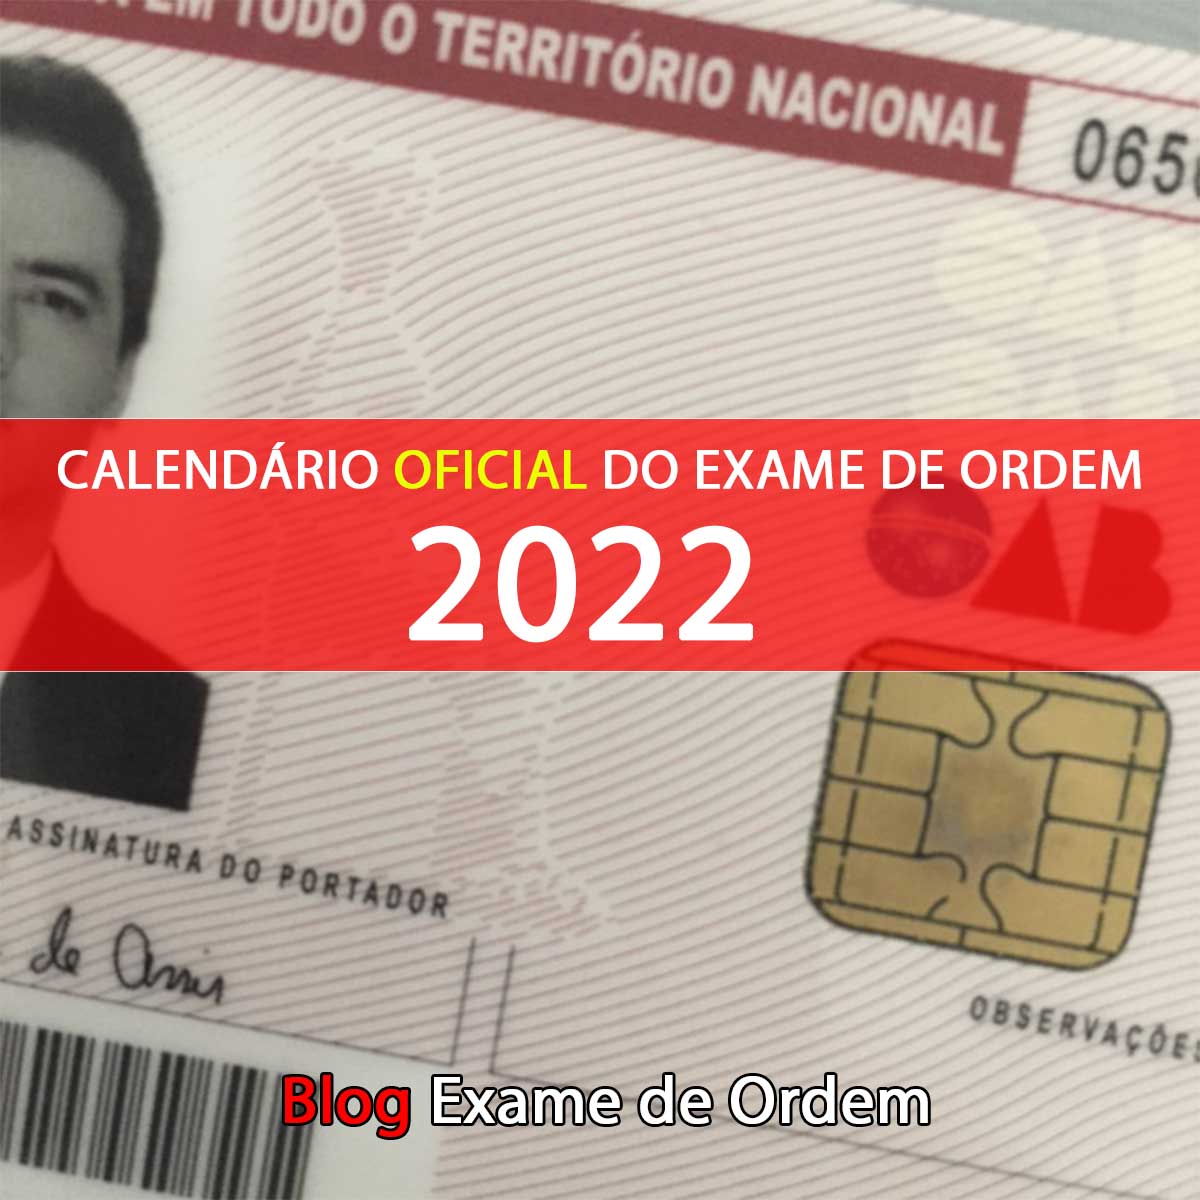 Publicado o Calendário 2022 OAB - Exame de Ordem